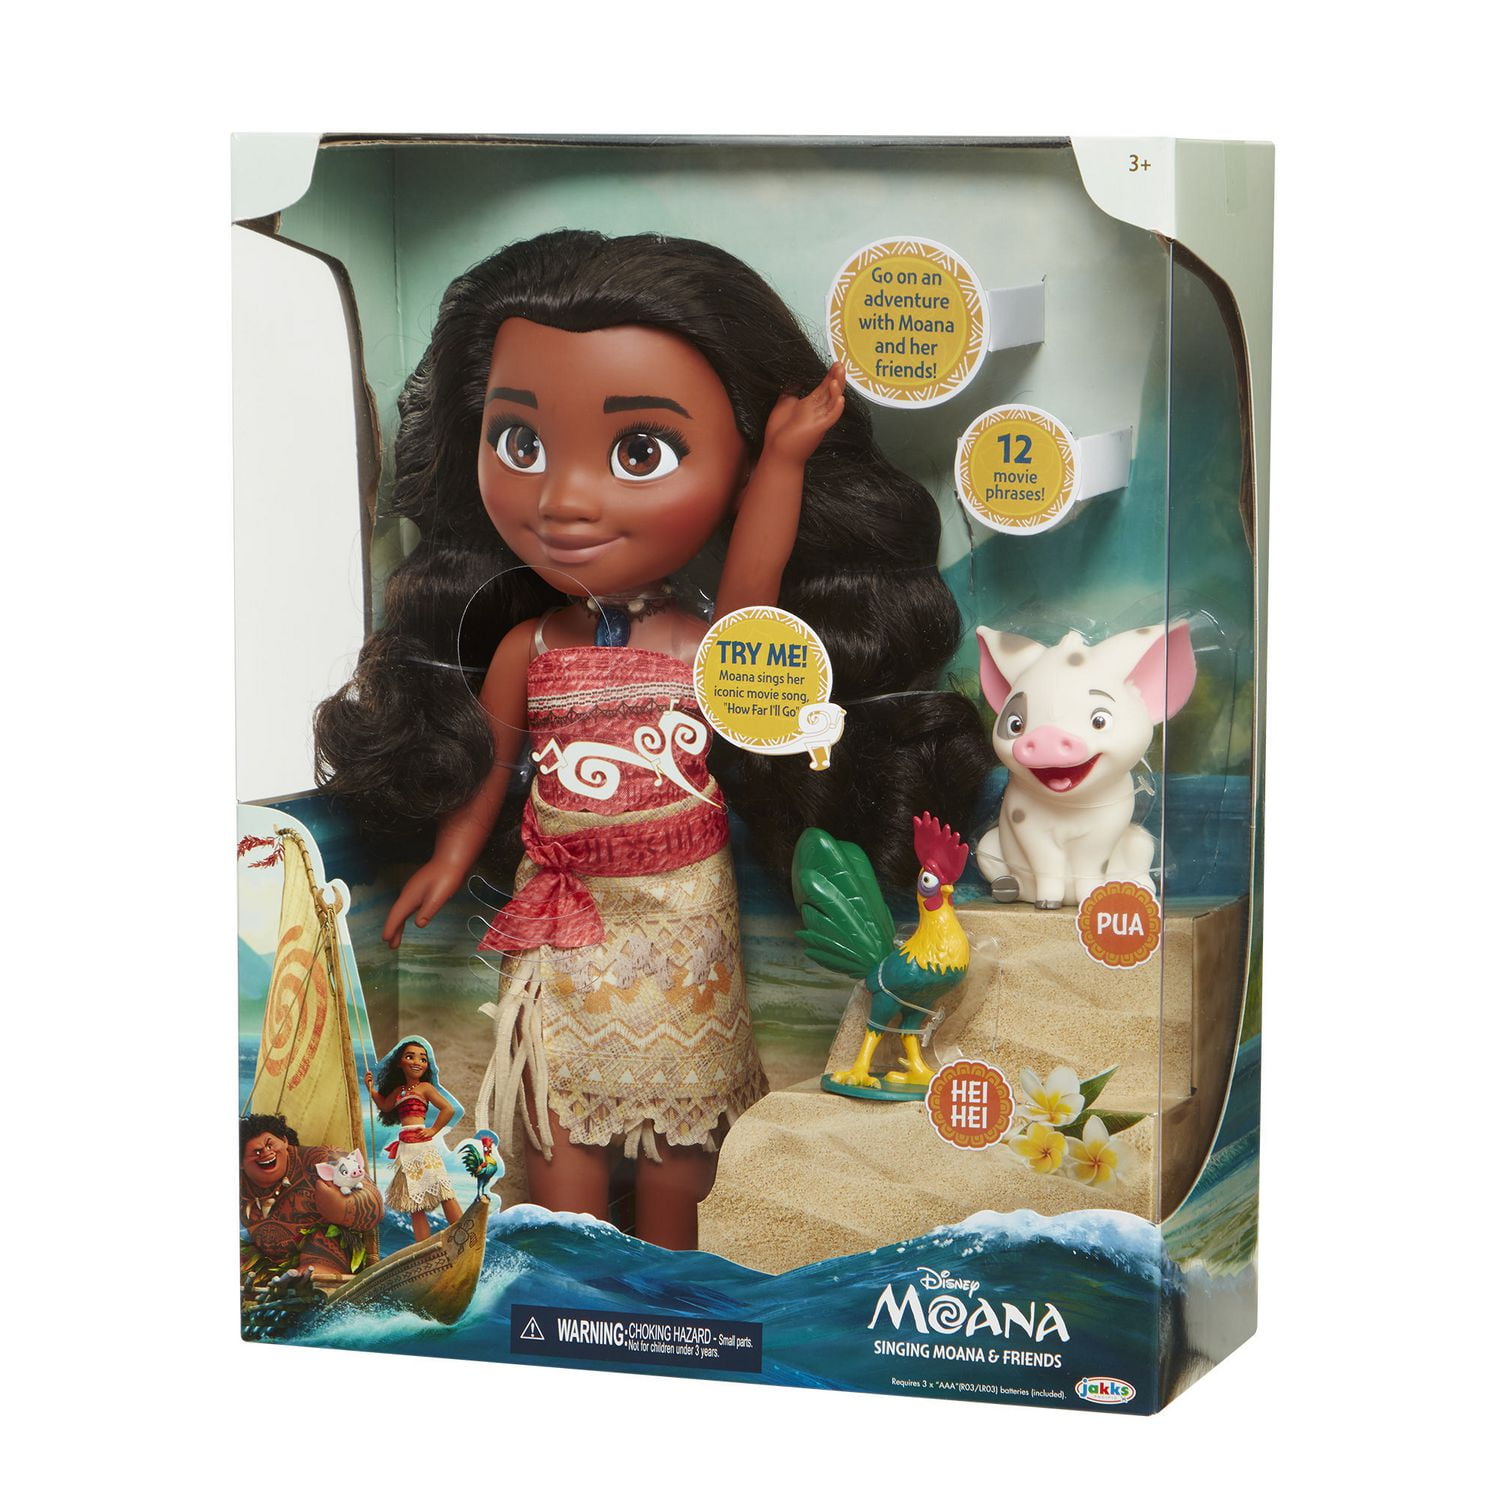 Buy Disney Moana Adventure Doll - 14 Inches with Disney's Moana